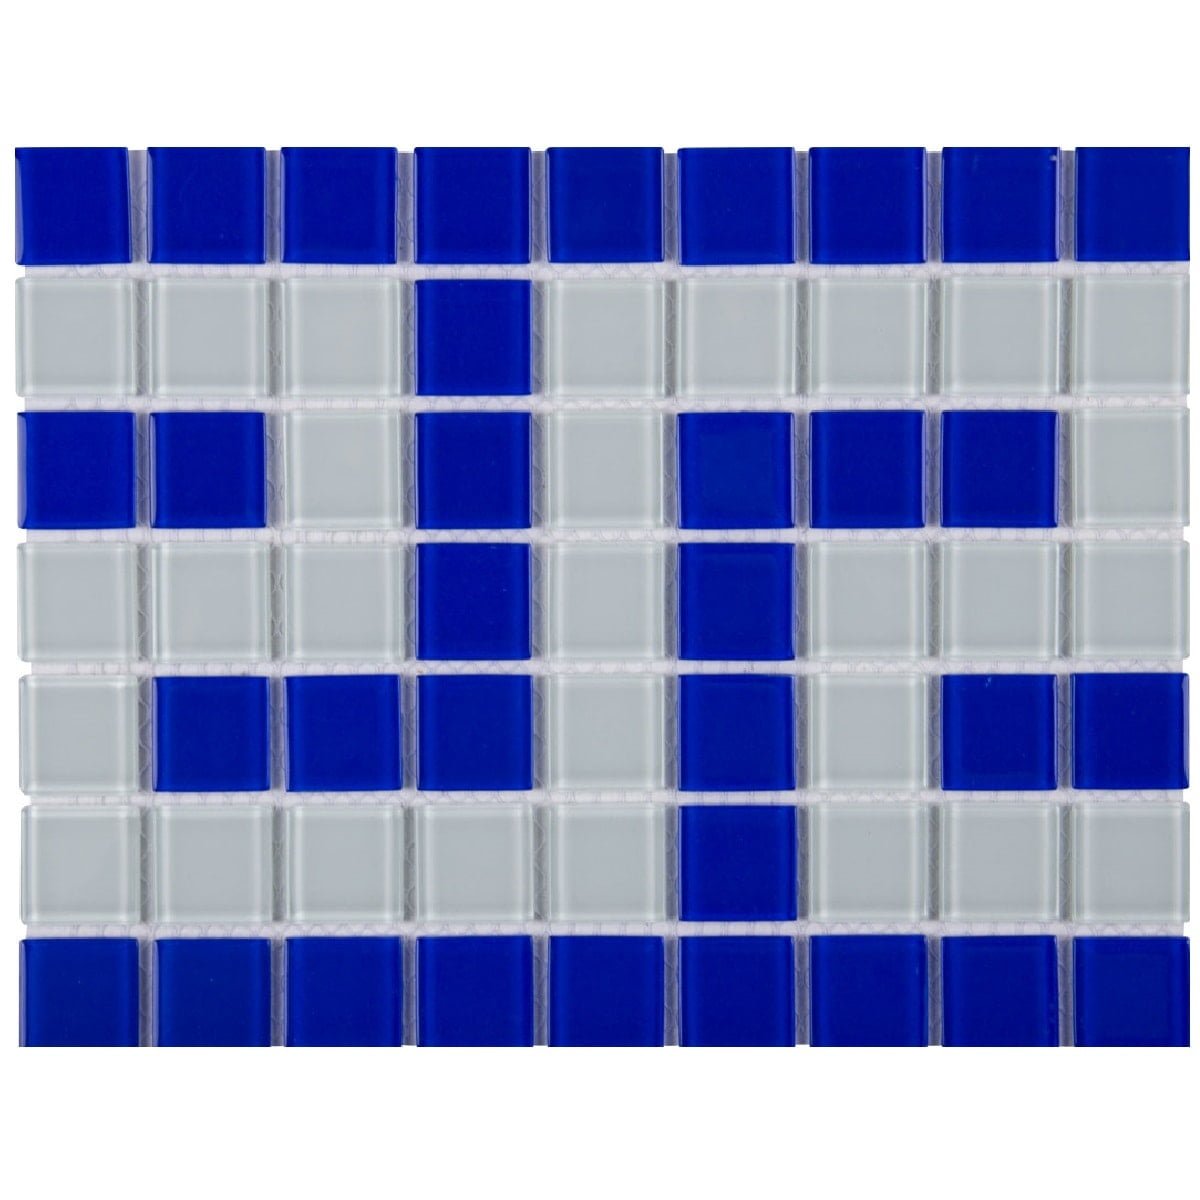 Фриз греческий Aquaviva Cristall B/W сине-белый, цена